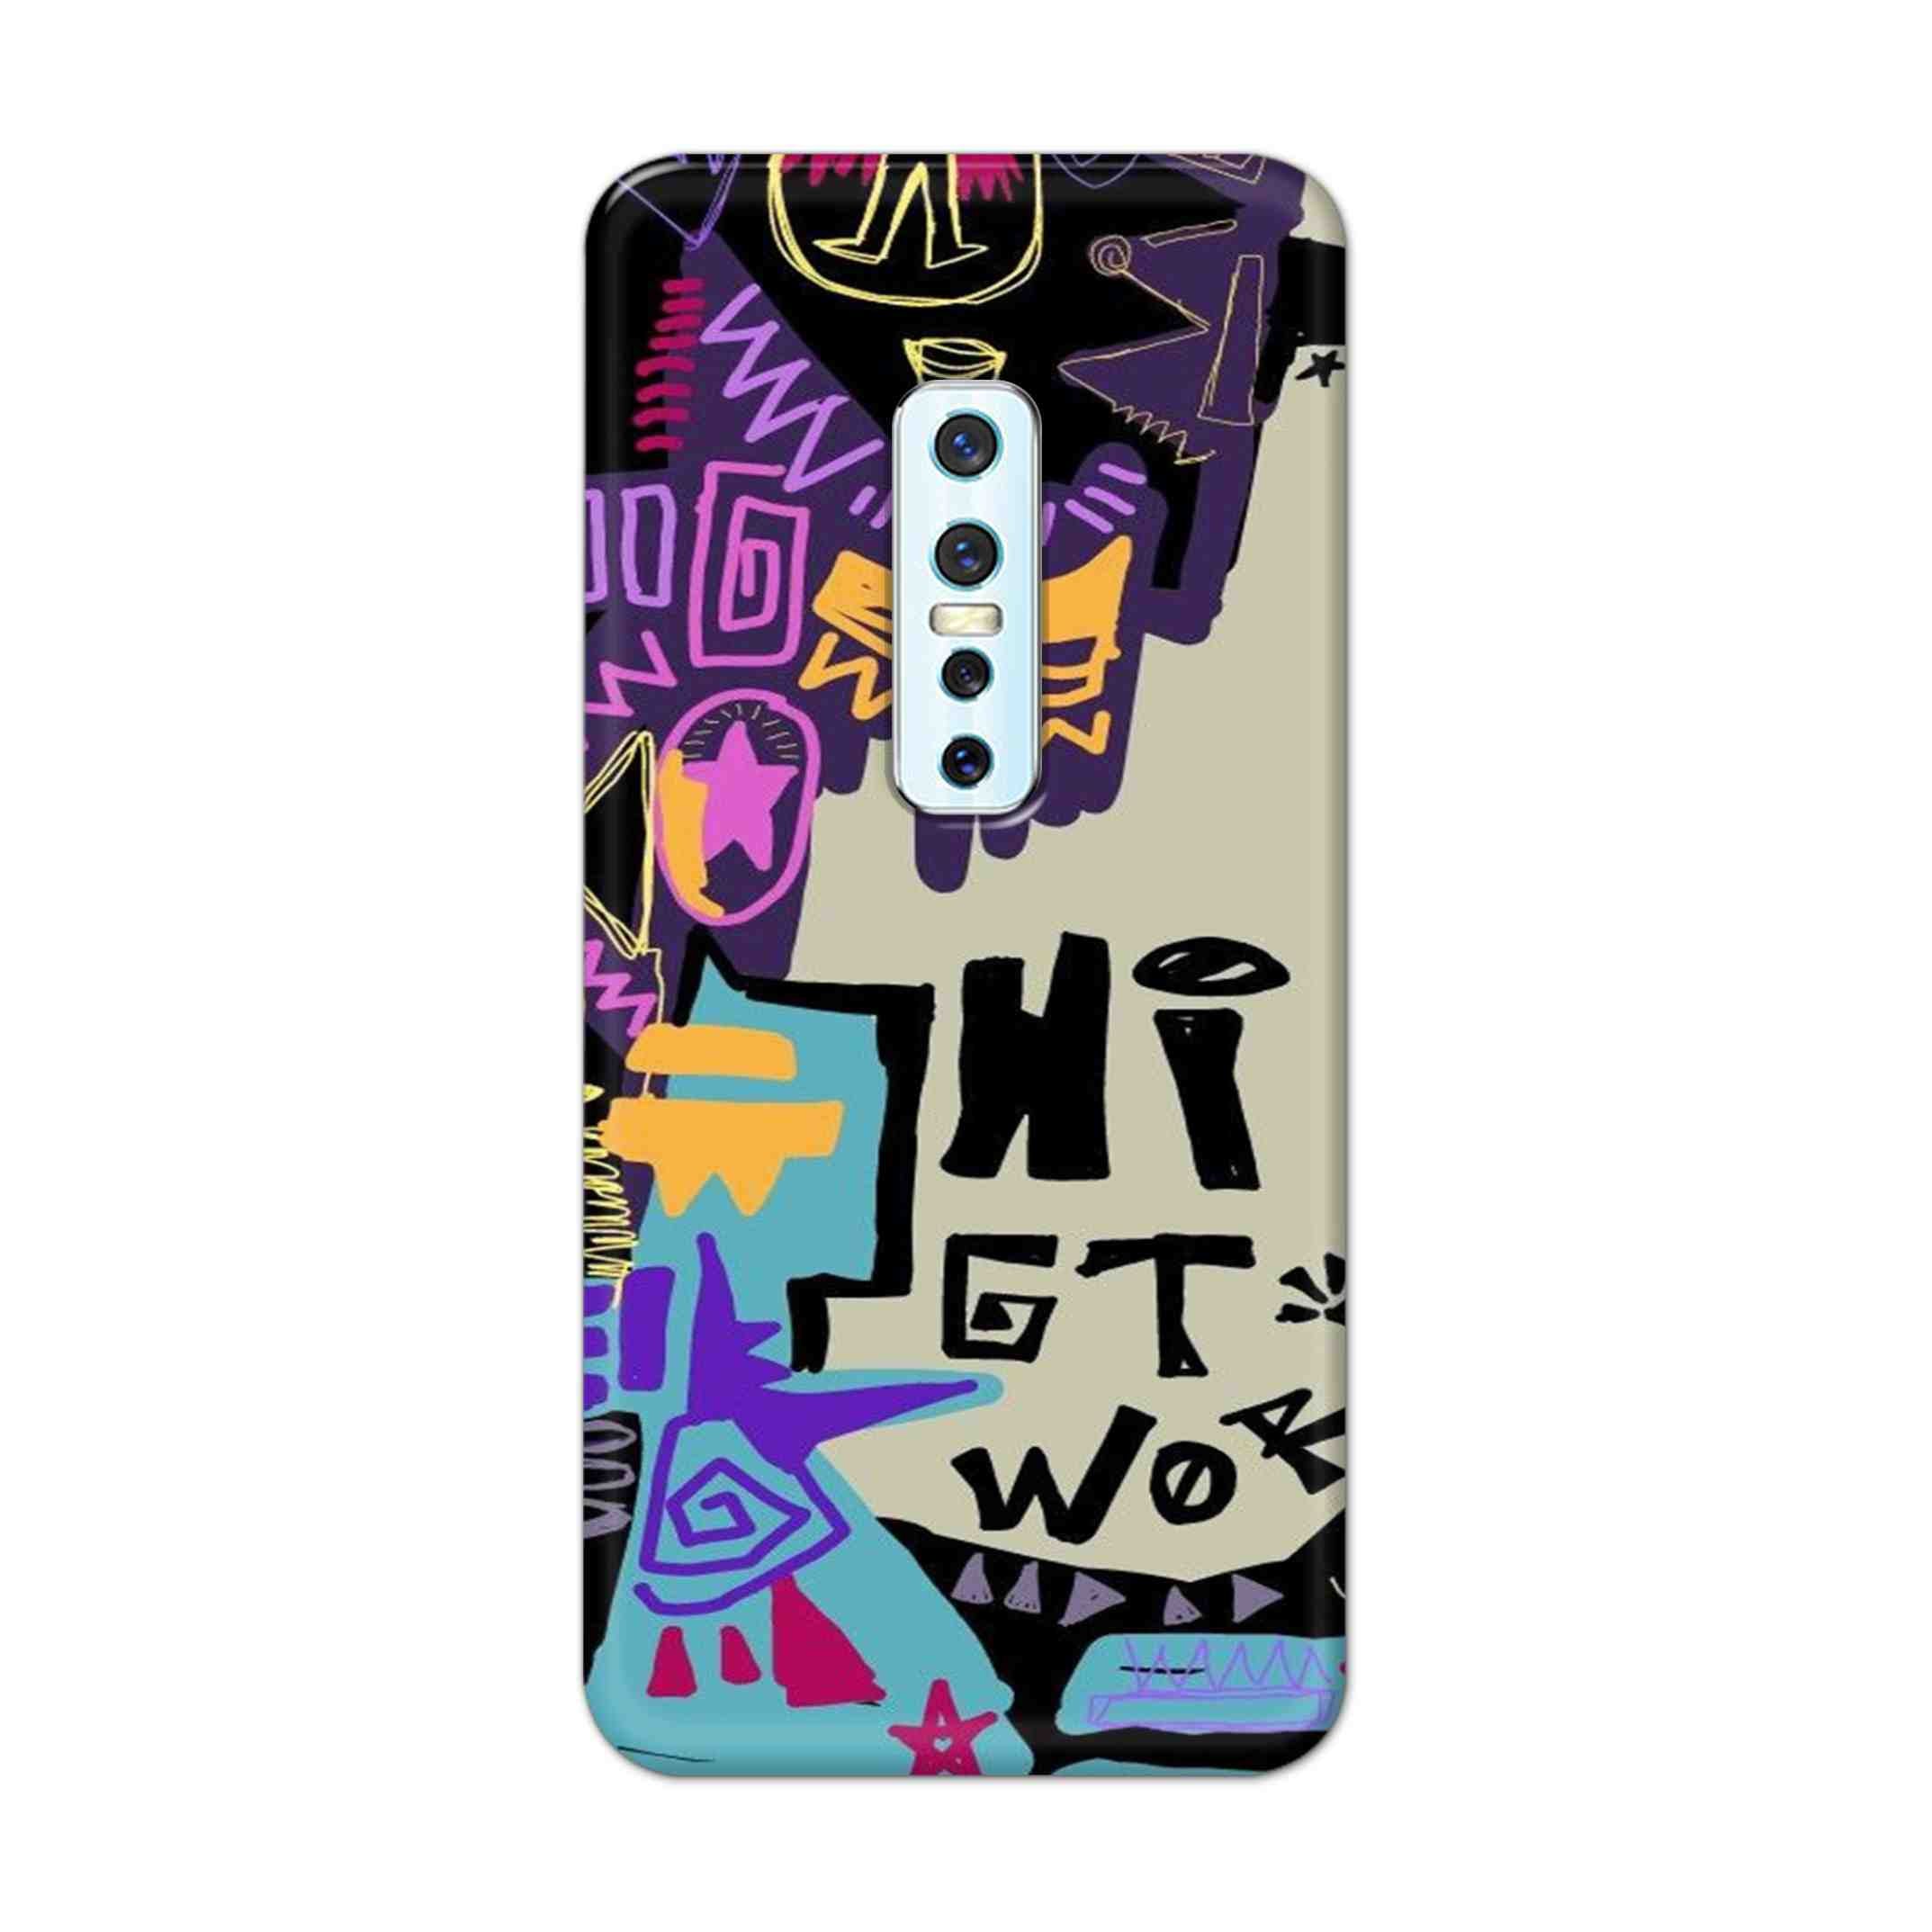 Buy Hi Gt World Hard Back Mobile Phone Case Cover For Vivo V17 Pro Online